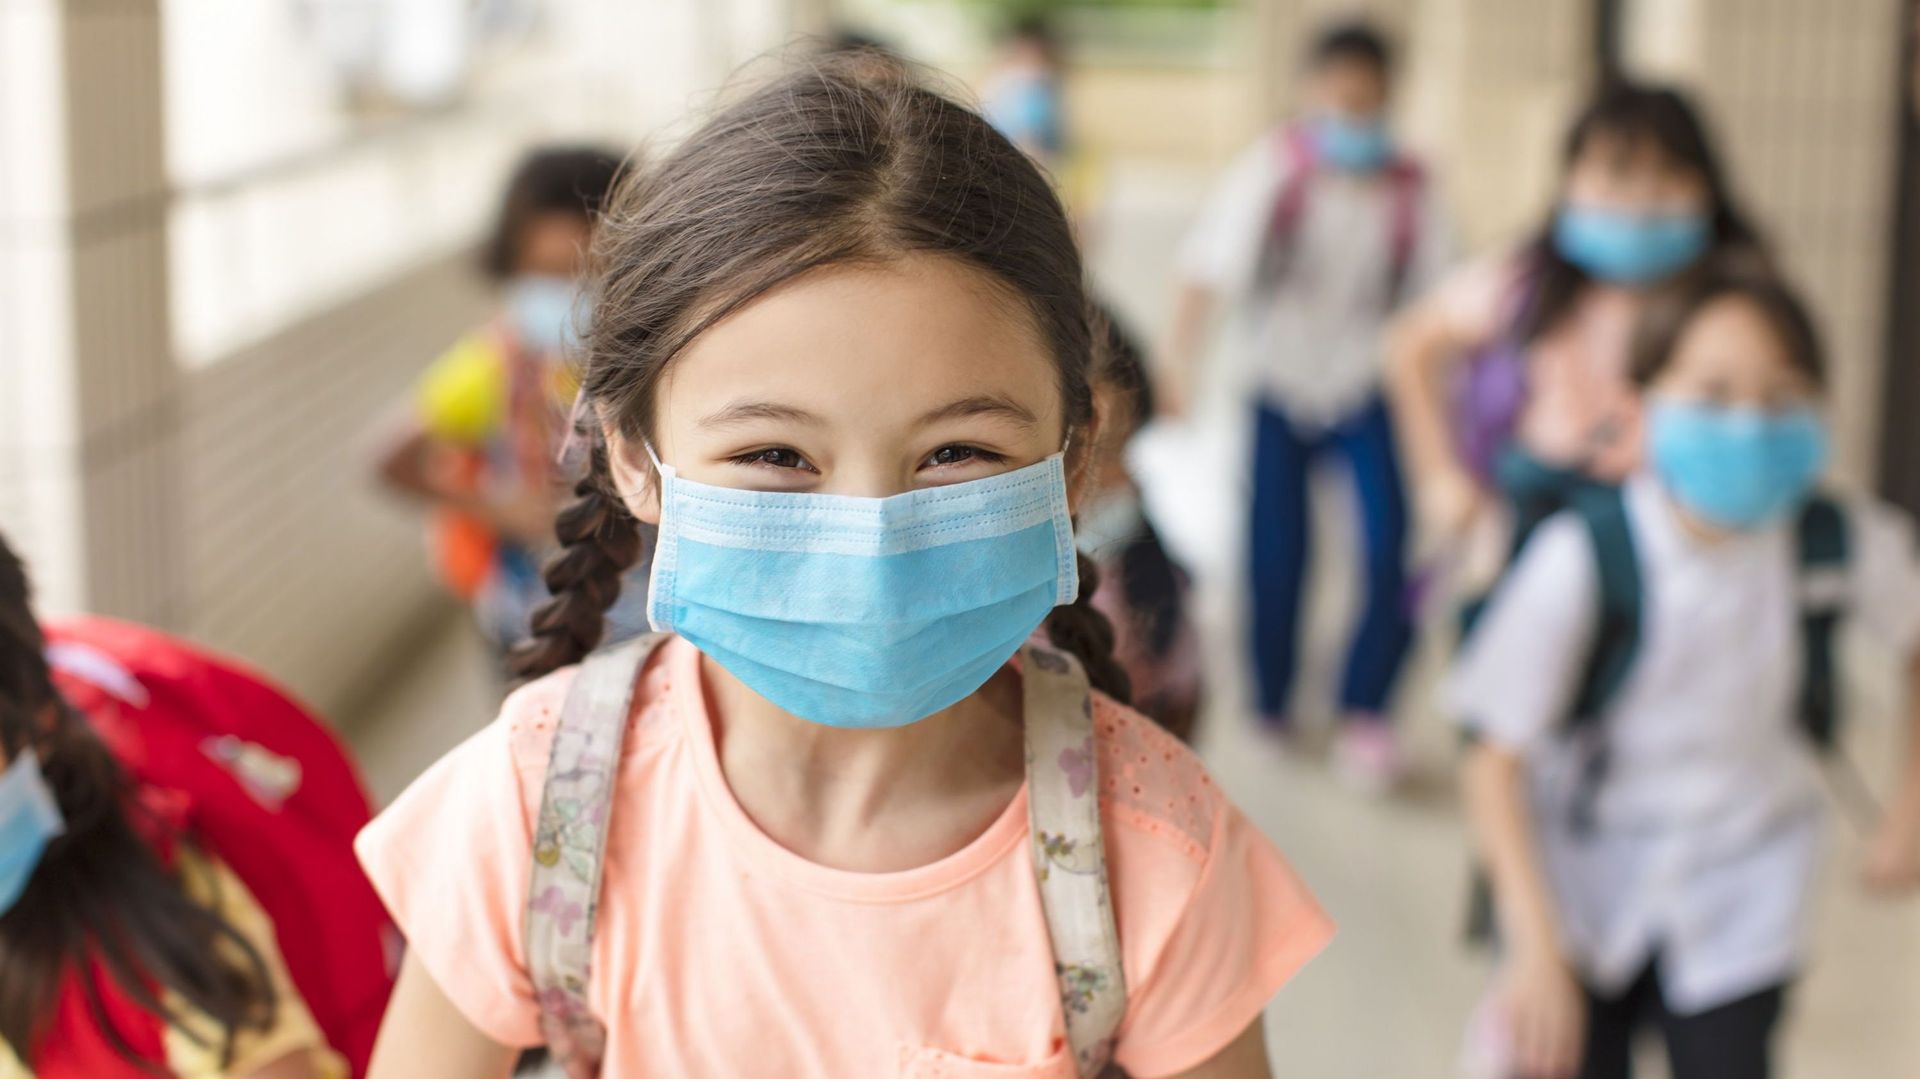 Coronavirus : faut-il s’inquiéter d’une hausse des nouvelles contaminations des enfants au variant Delta ? Photo d'illustration